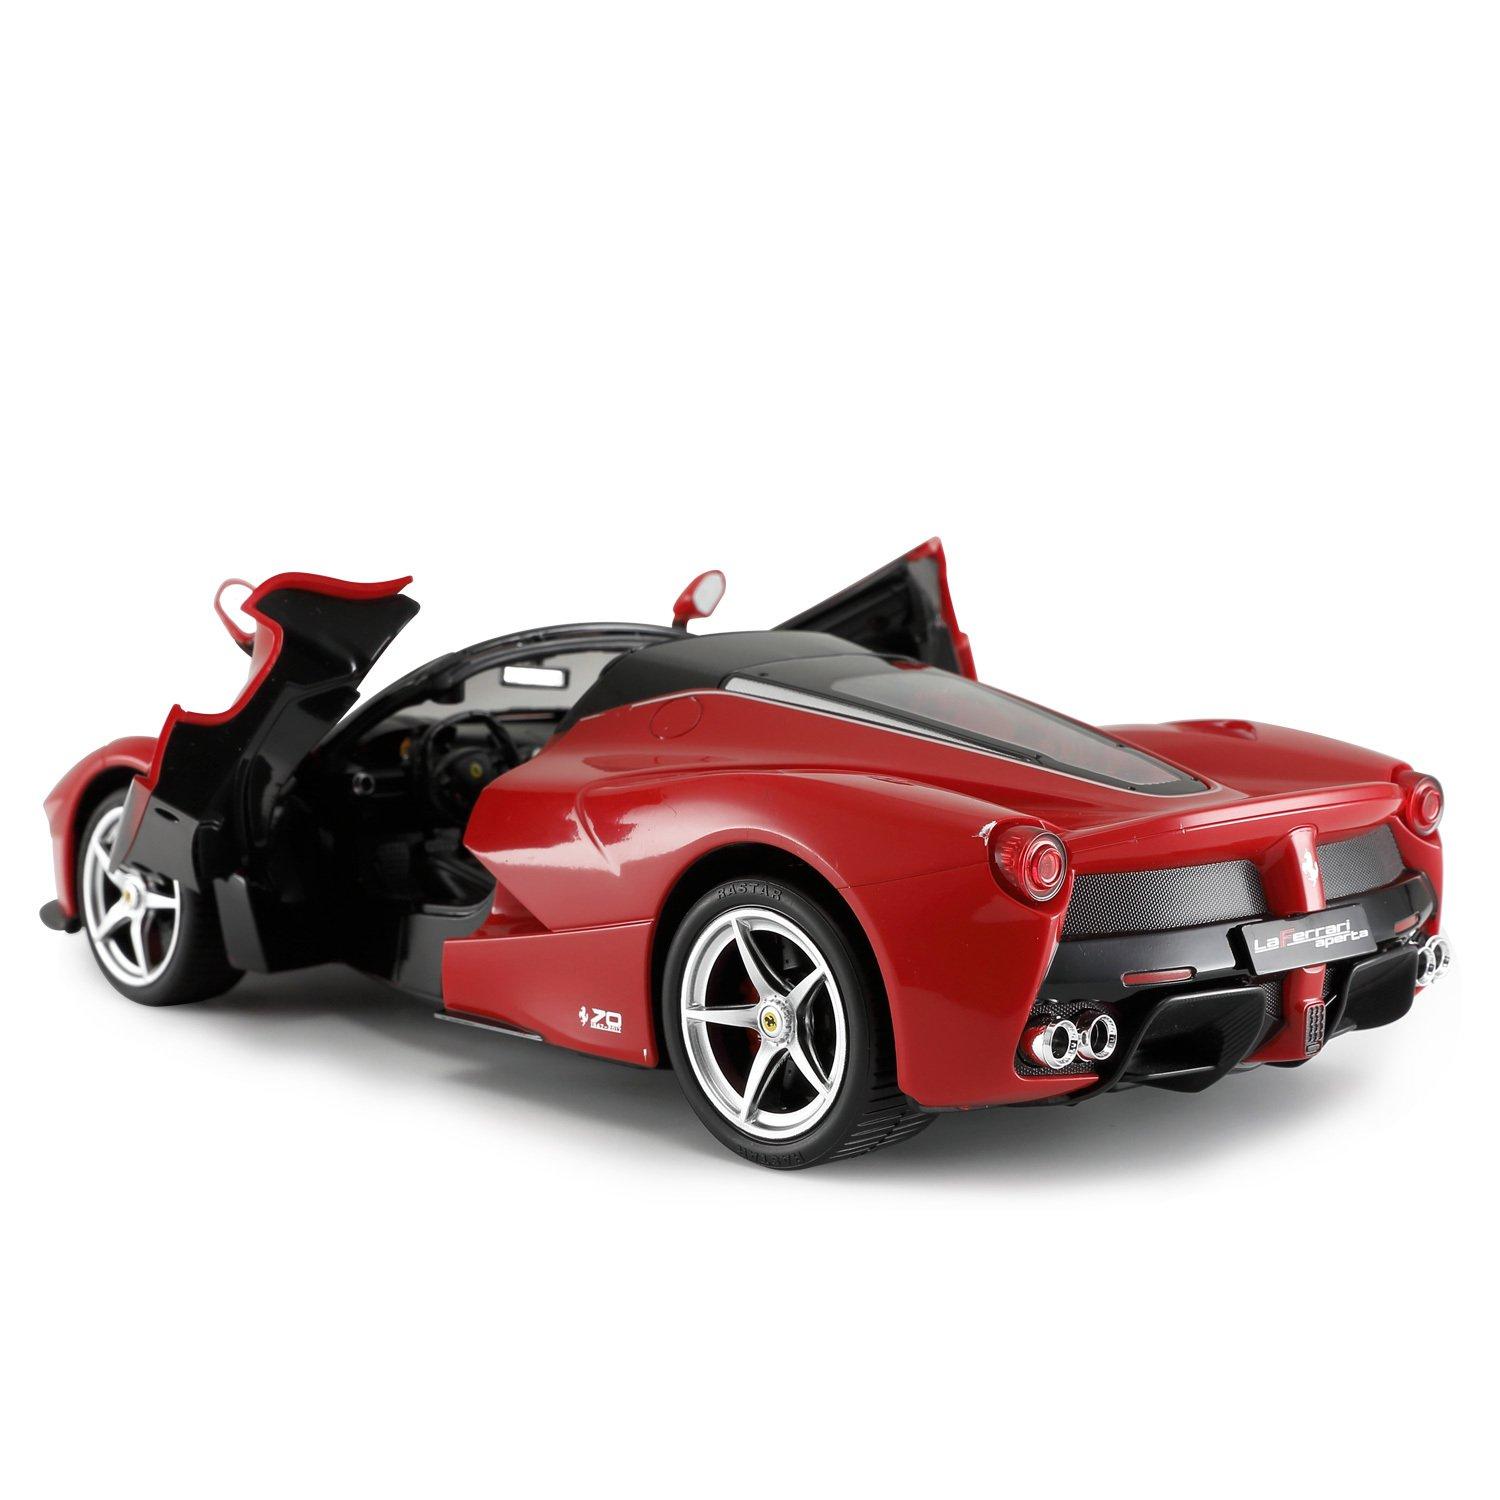 Rastar ру 1. Машинка р/у Rastar Ferrari LAFERRARI 1:14 красная. Rastar 75800. Ferrari LAFERRARI 1:12 на пульте управления машинка XQ 2013. Машины на радиоуправлении масштаб 1:14 Rastar.